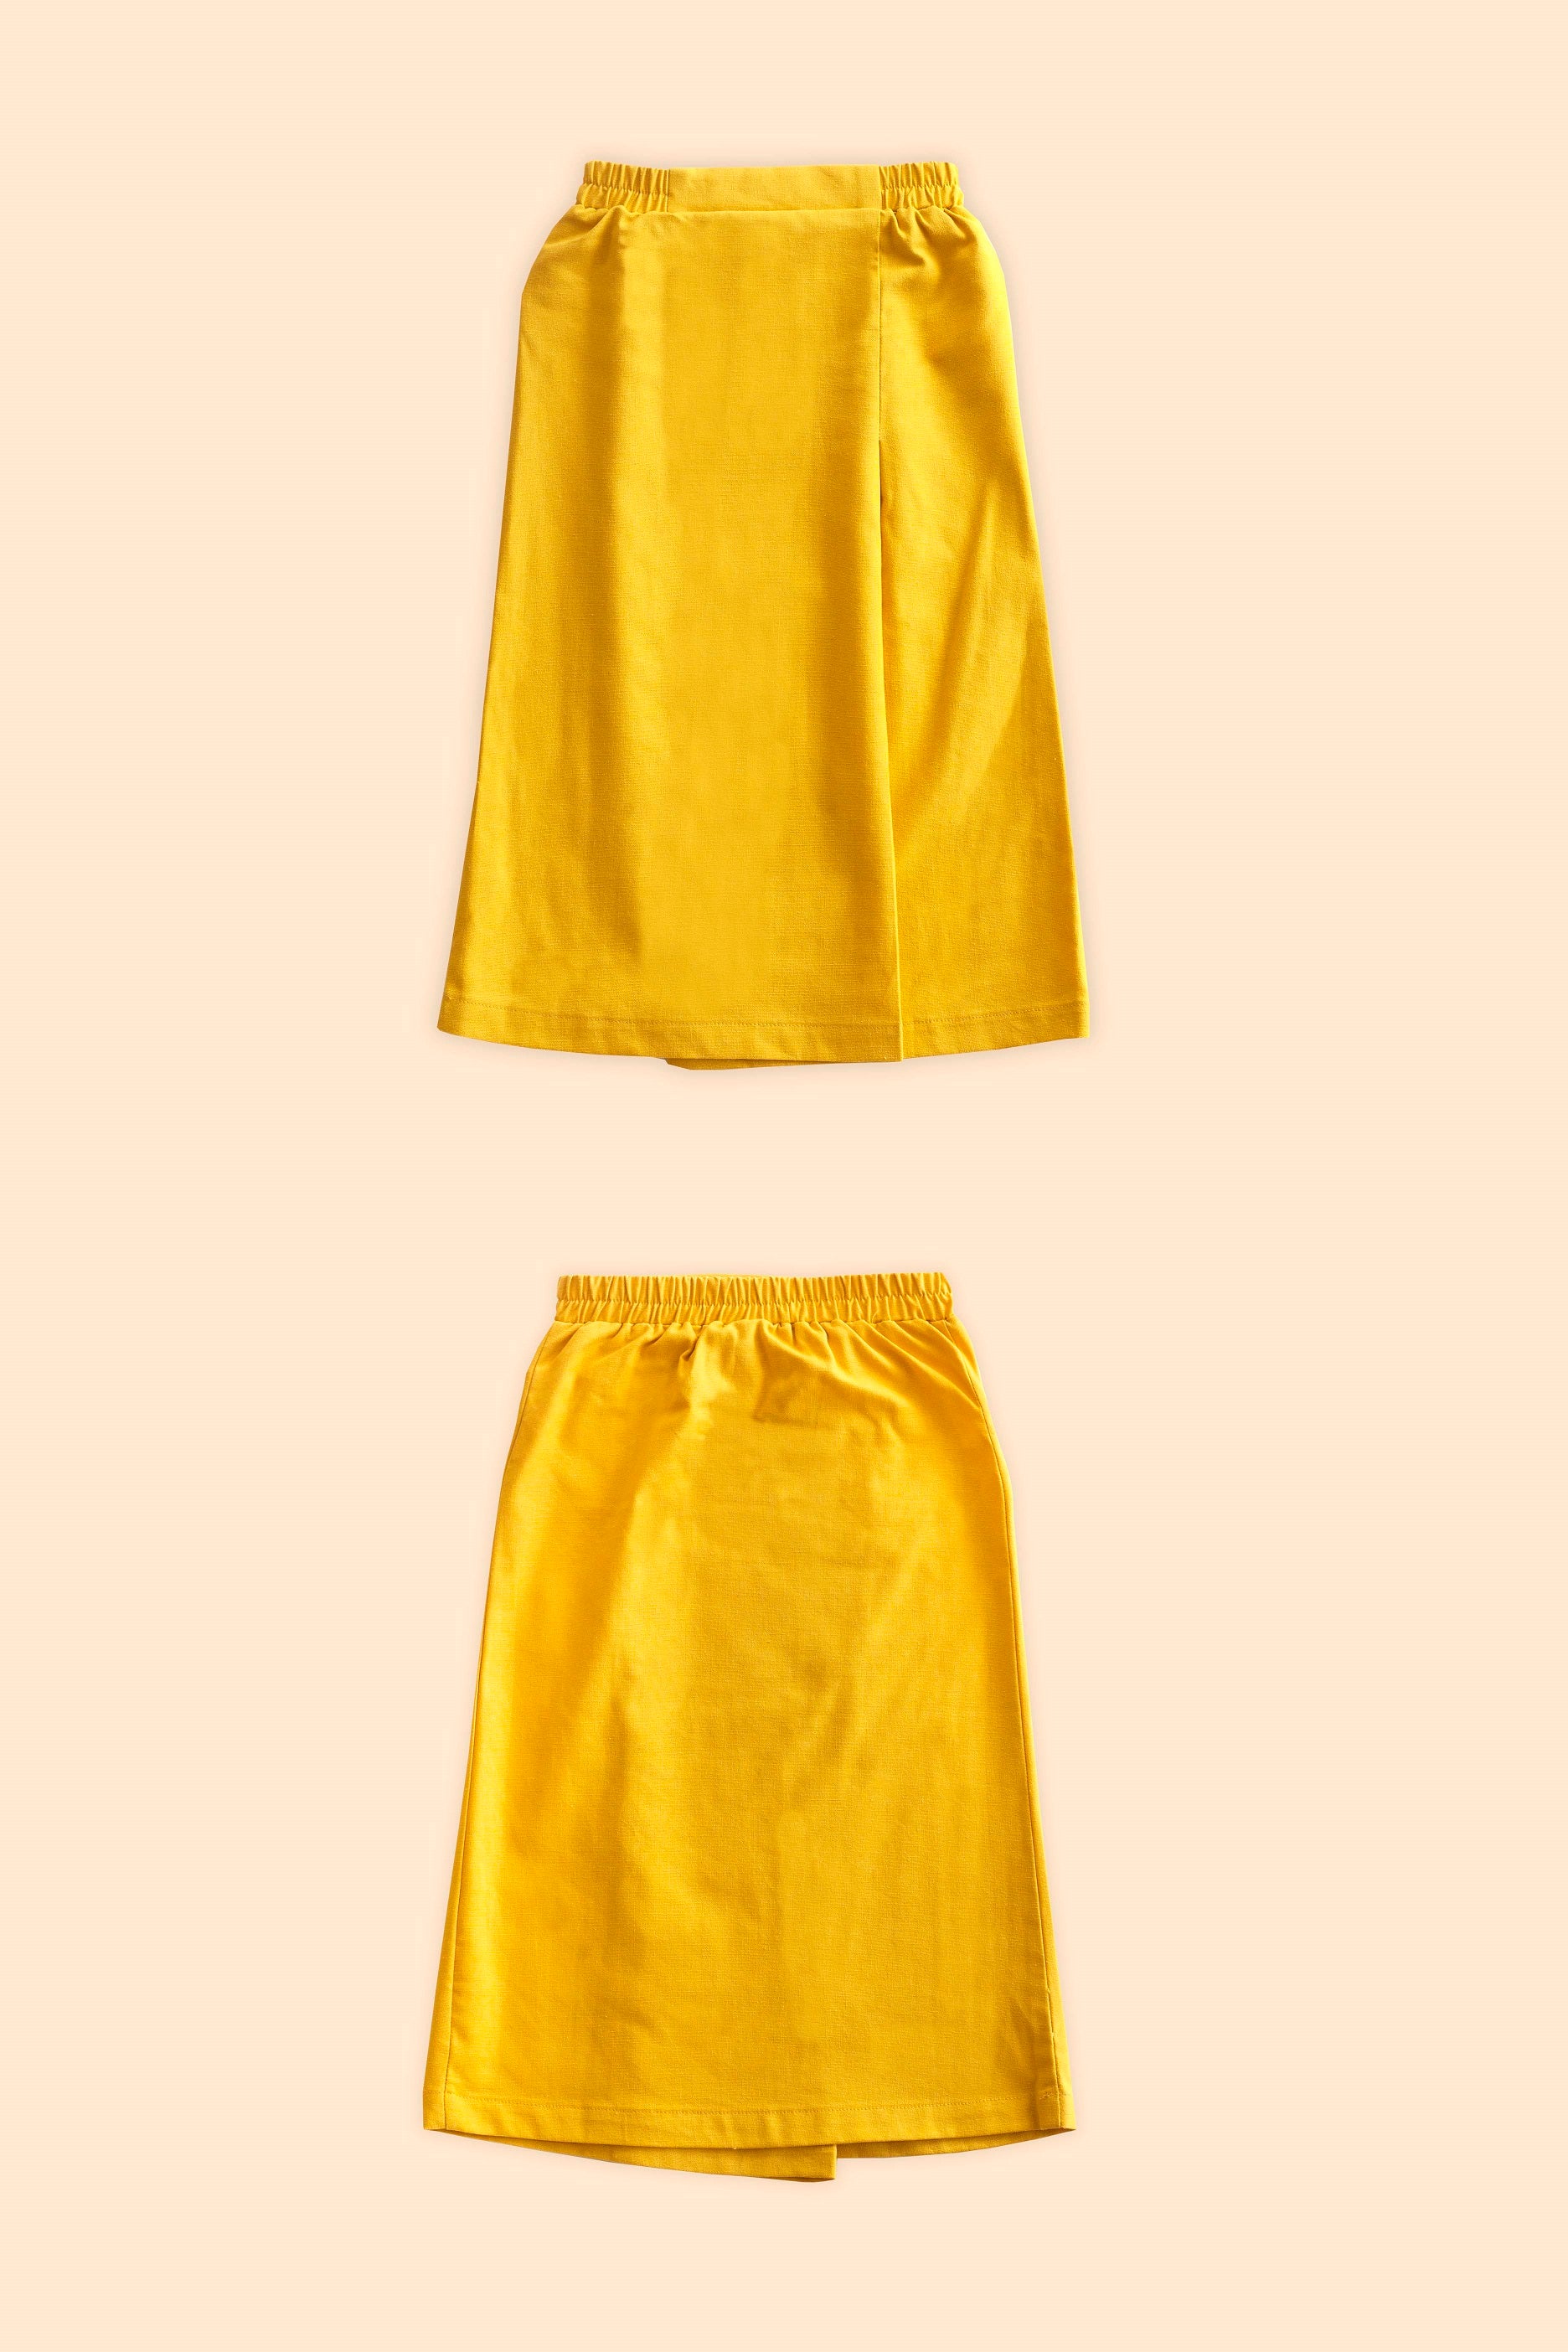 cotton linen girls skirt